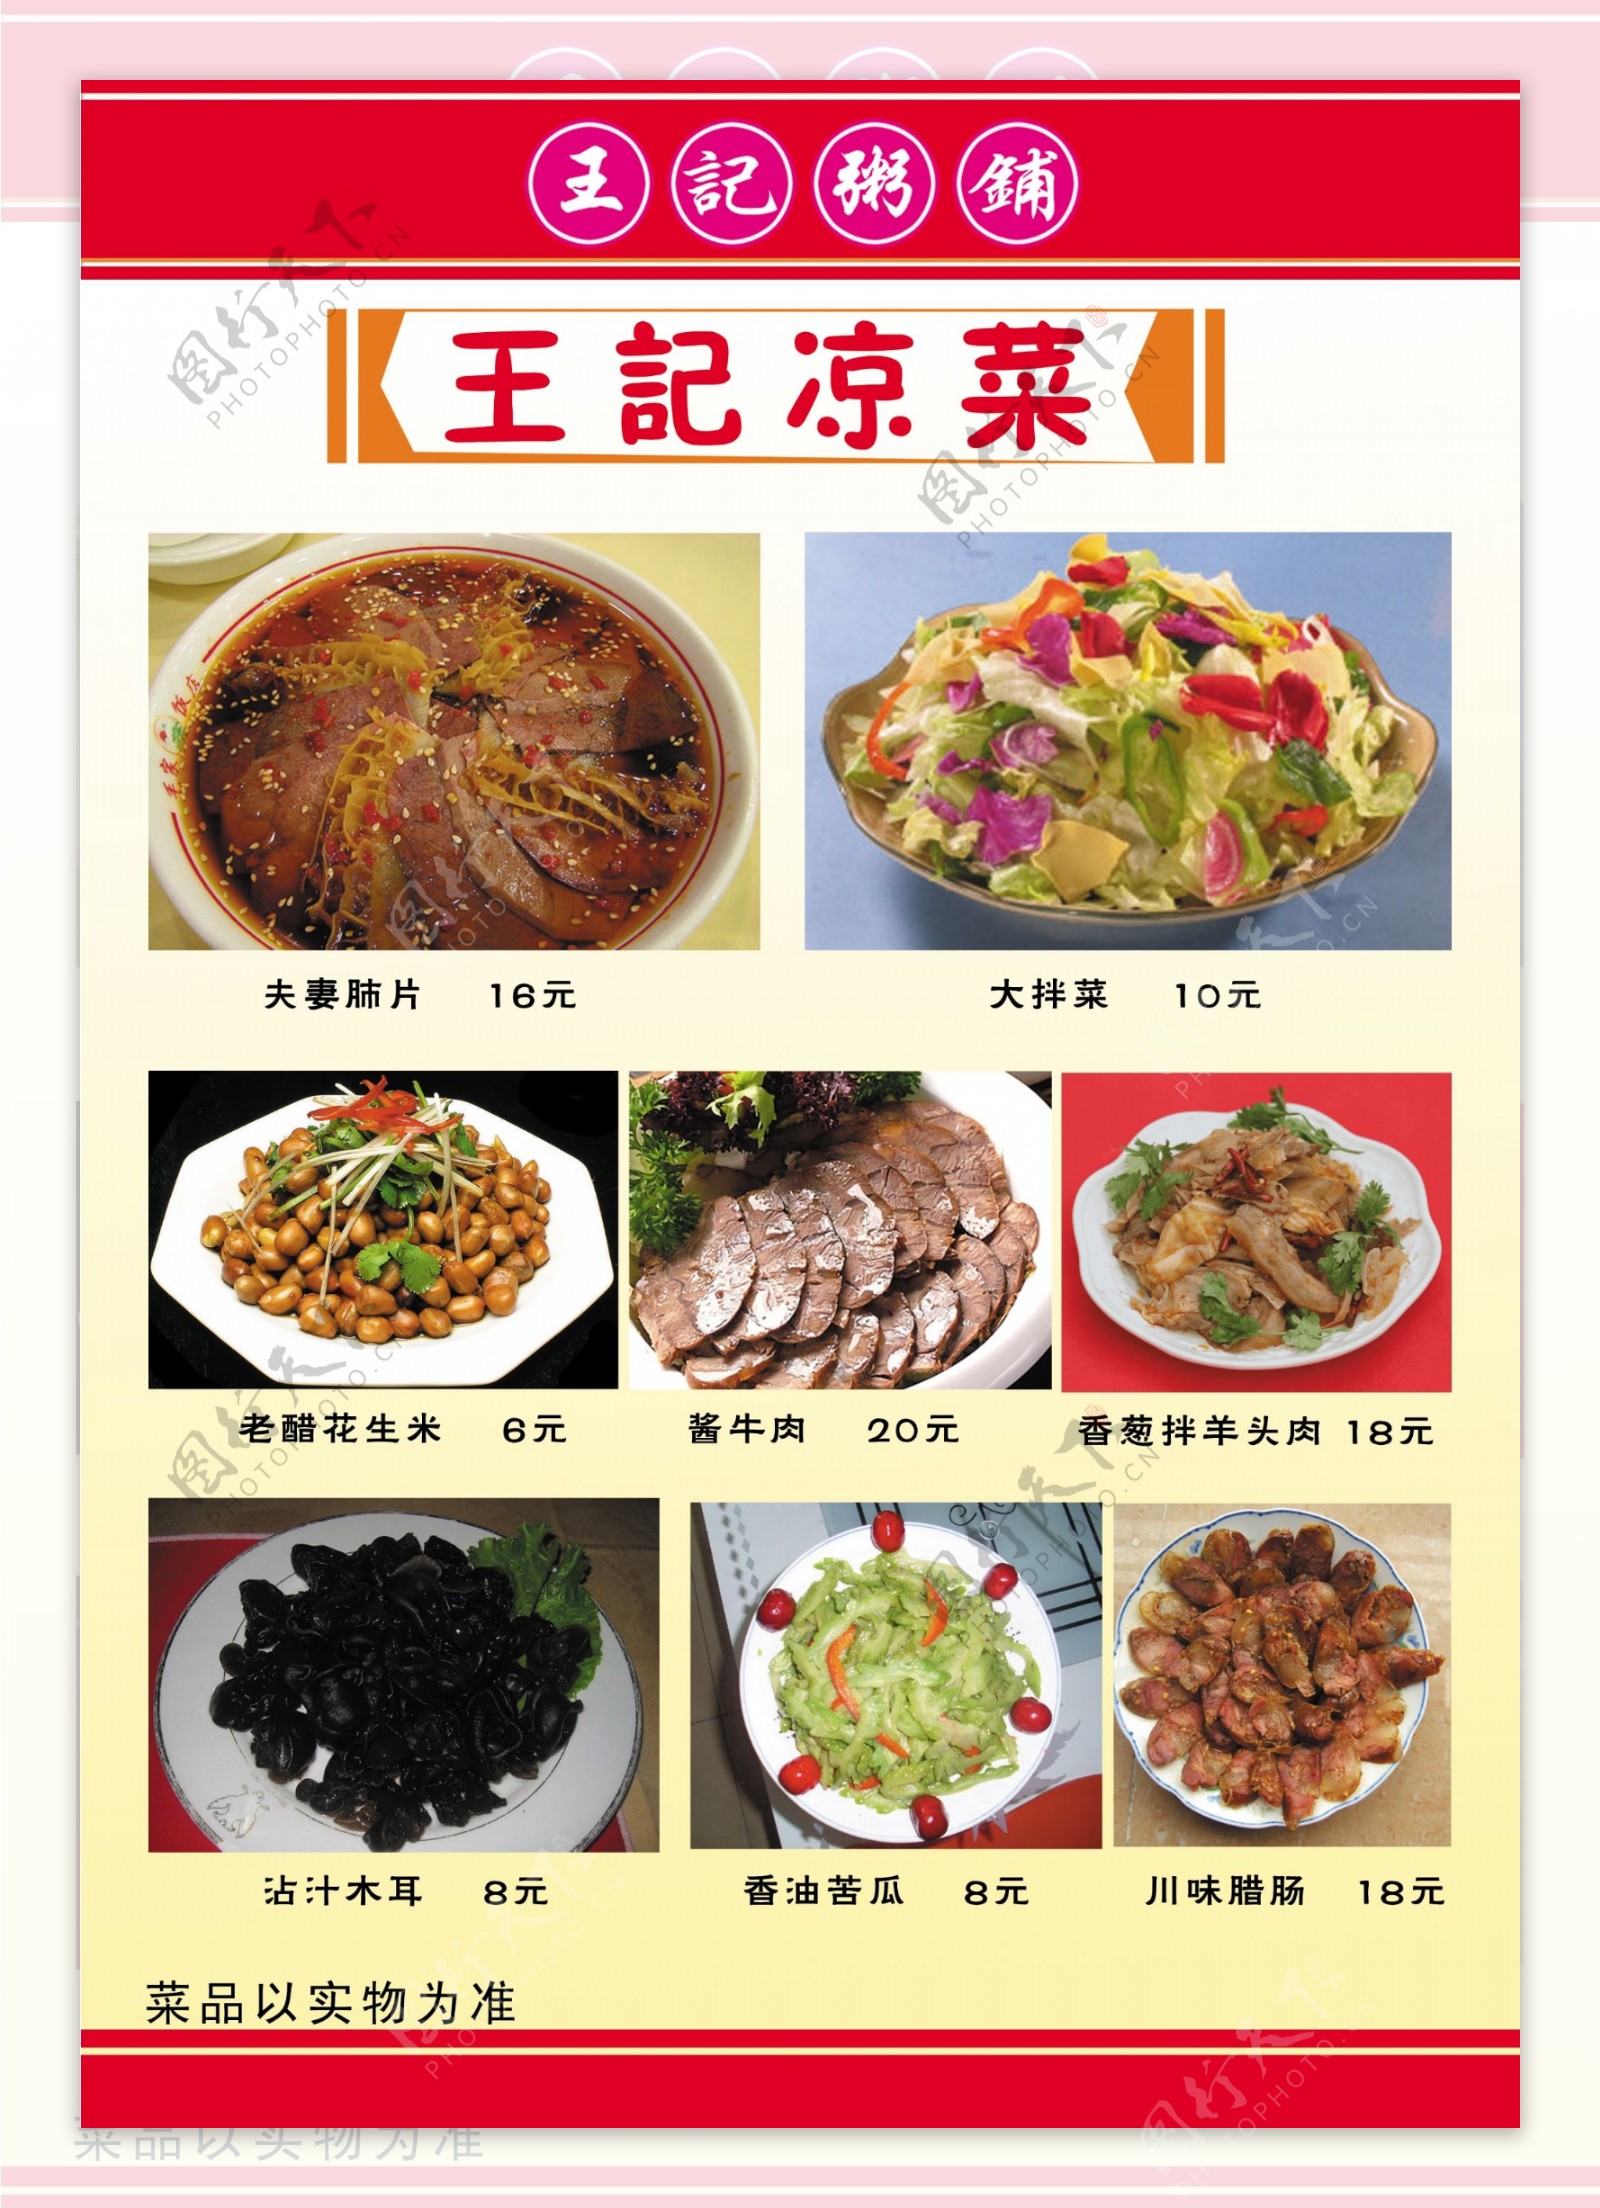 王记粥铺菜谱9食品餐饮菜单菜谱分层PSD